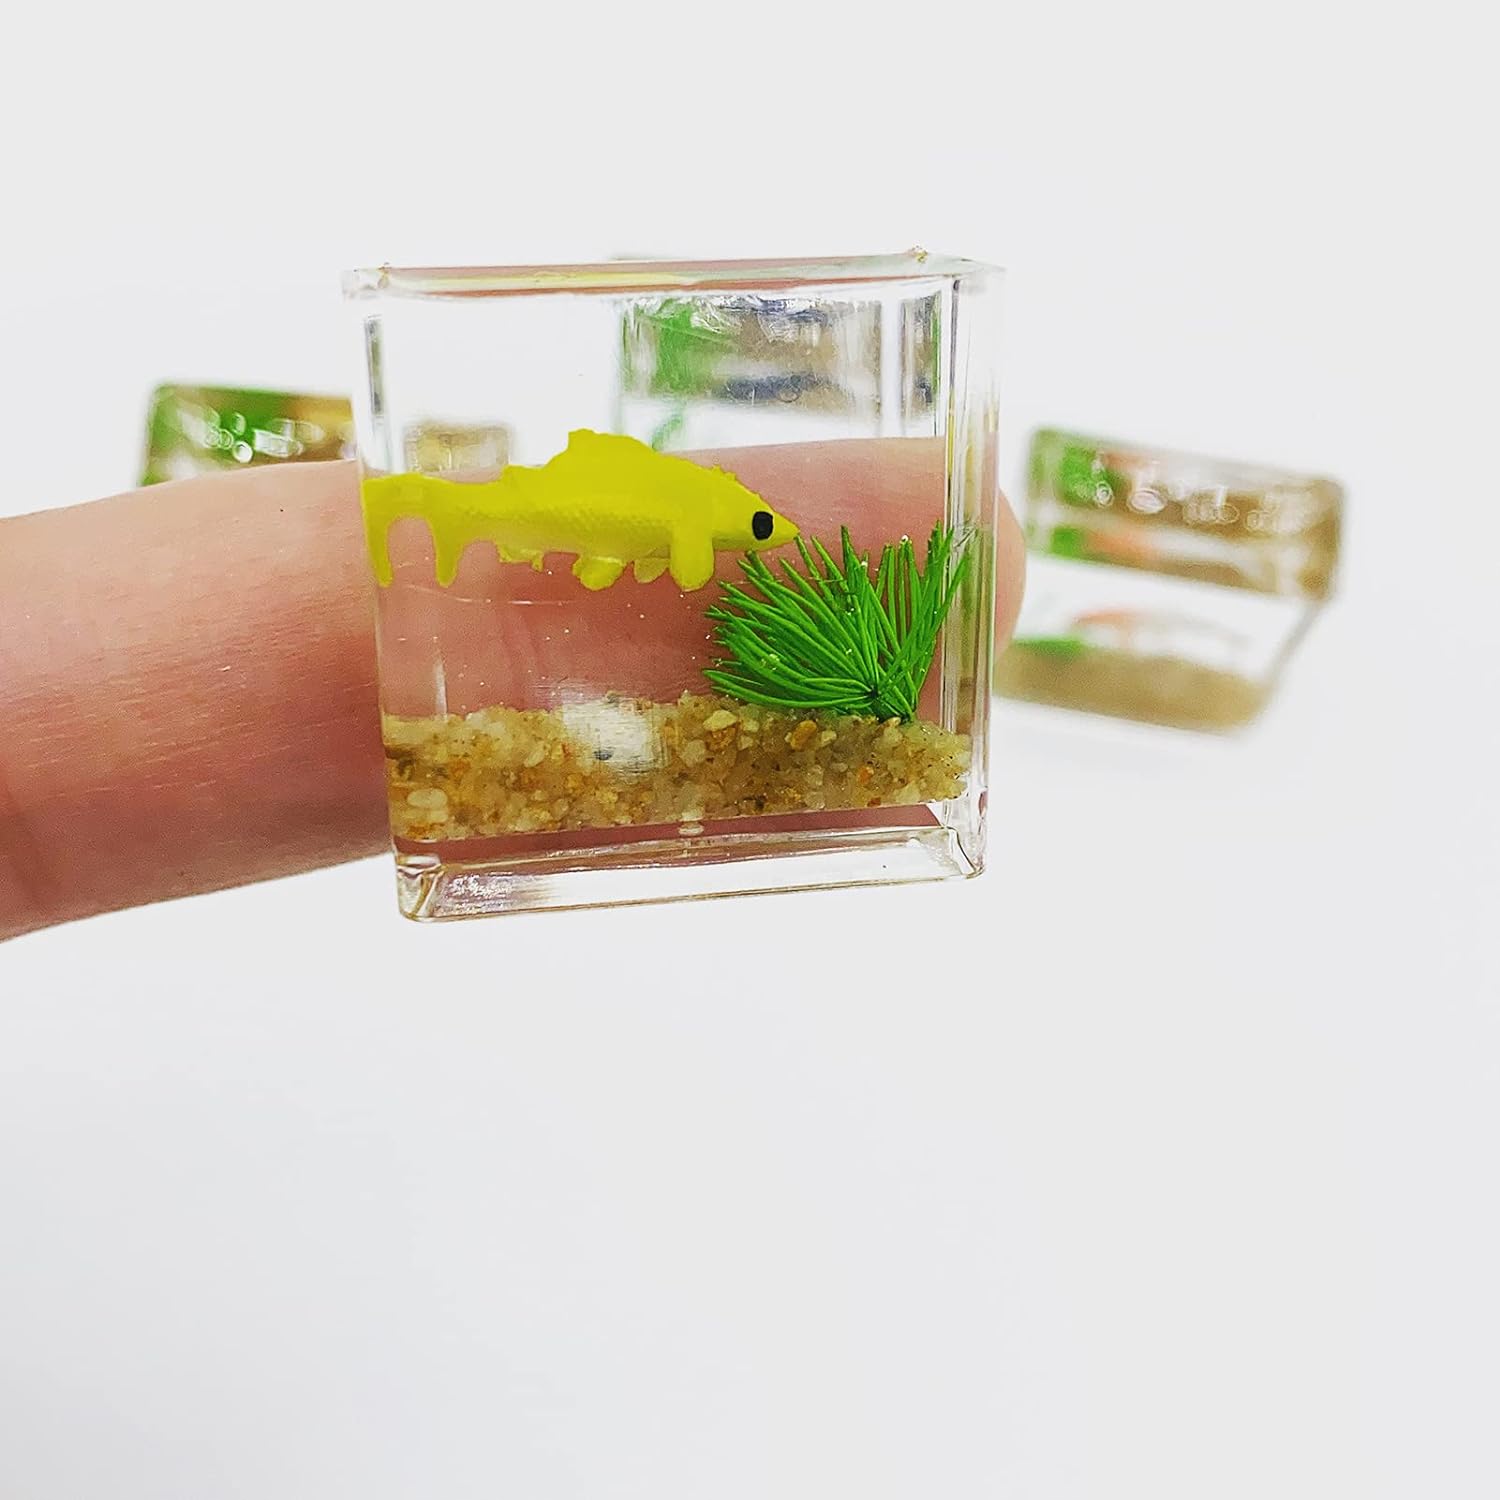 Dollhouse Fish Tank, 1:12 Scale Miniature Resin Accessories for Garden Scene Decor Random Color Round